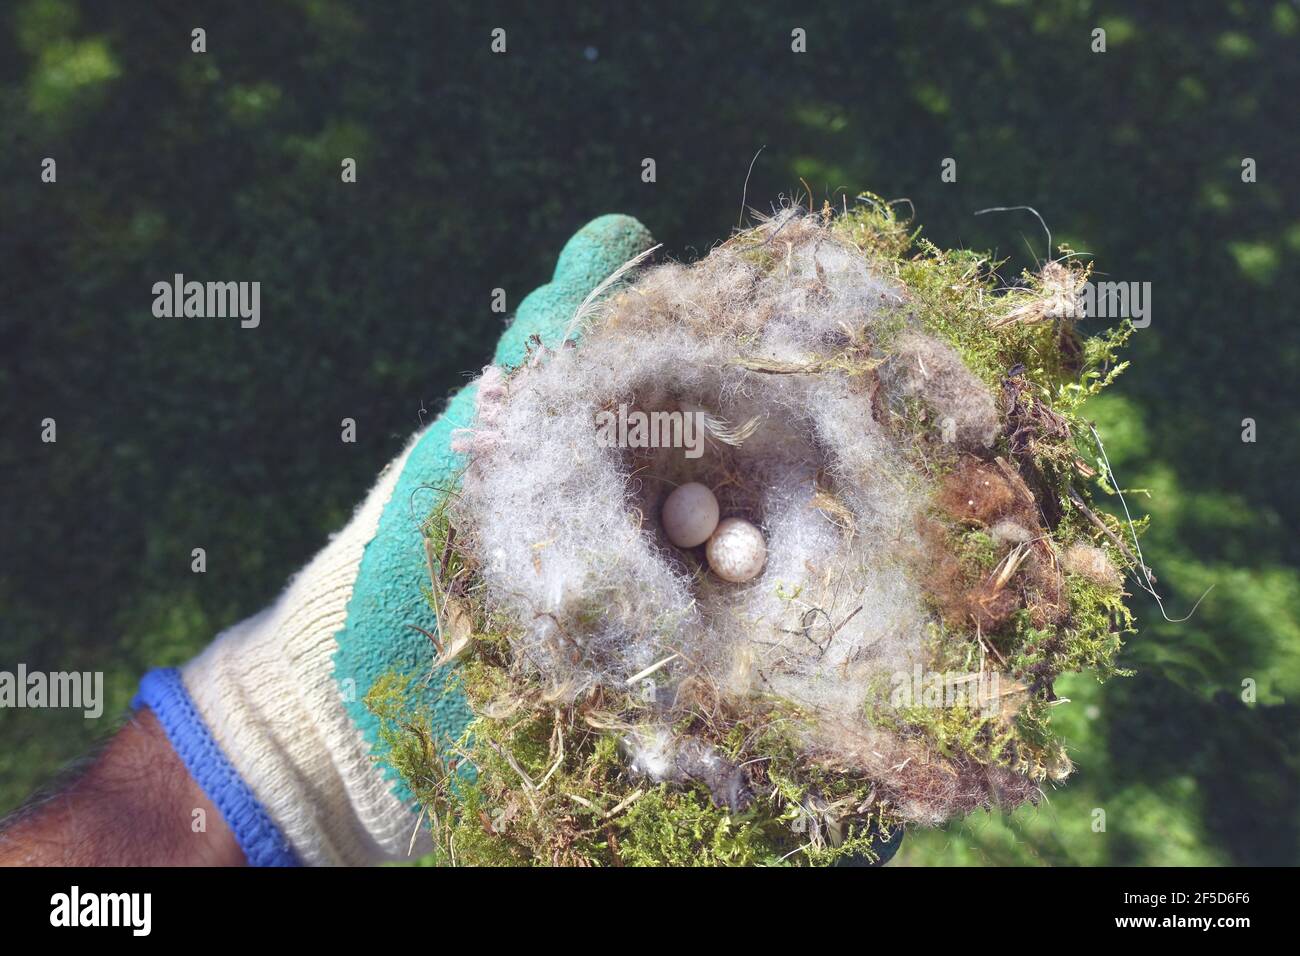 Nido de aves con dos huevos insoportables, limpieza de la caja de aves después de la temporada de cría, Alemania Foto de stock